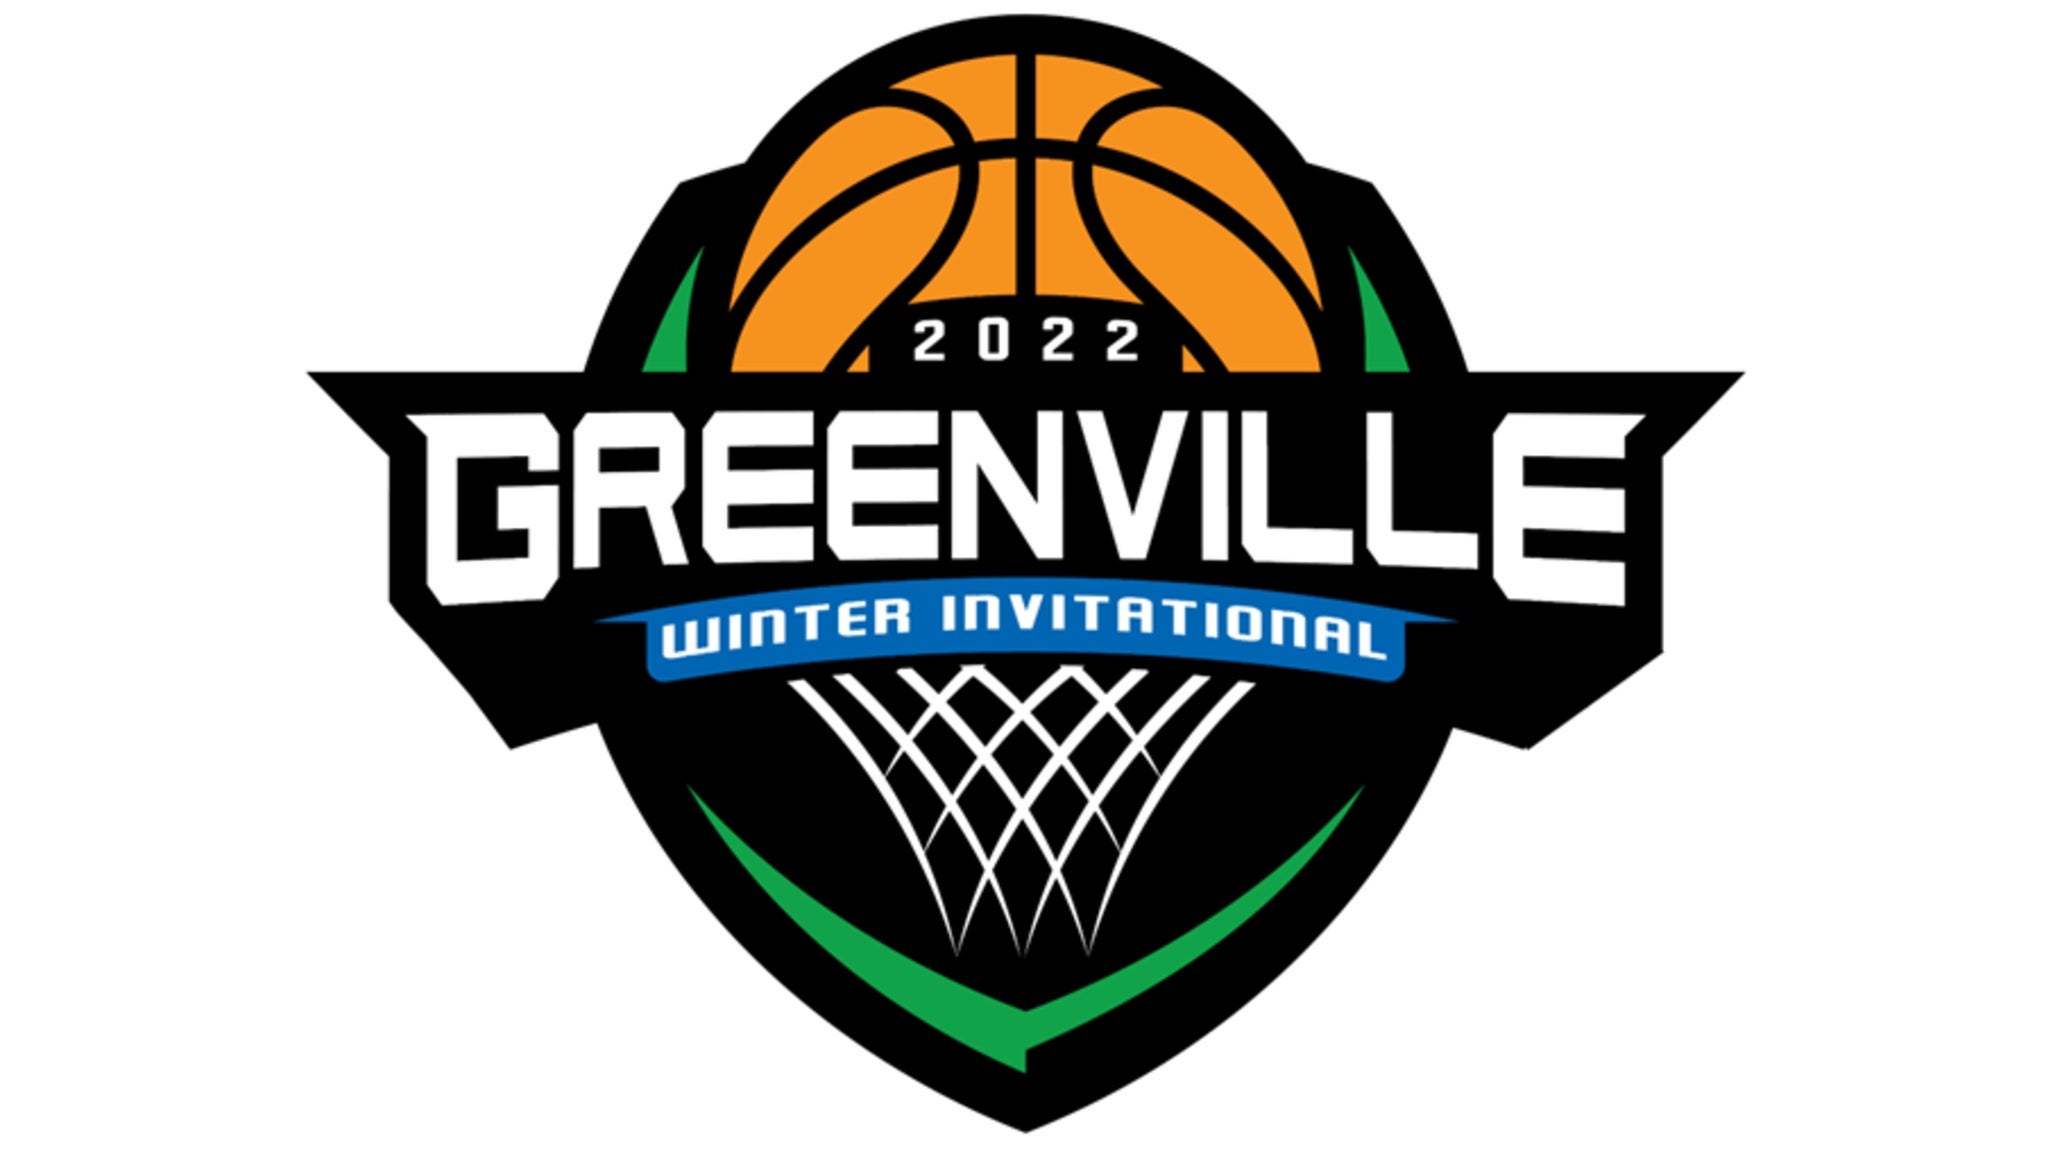 Greenville Winter Invitational in Greenville promo photo for Venue / Local presale offer code